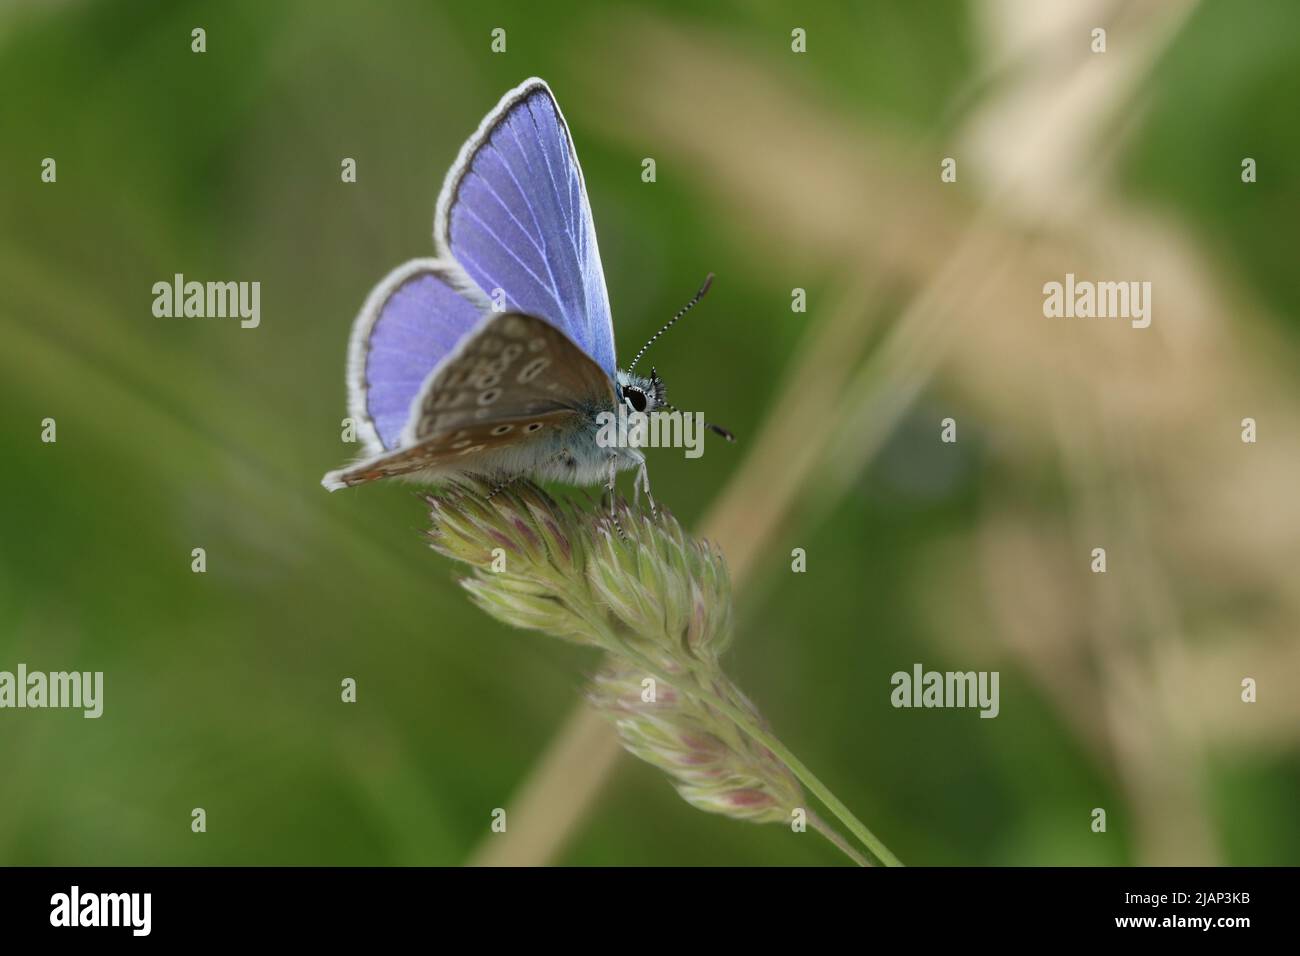 Una mariposa azul común masculina, Polyommatus icarus, descansando sobre semillas de pasto en un prado en primavera. Foto de stock